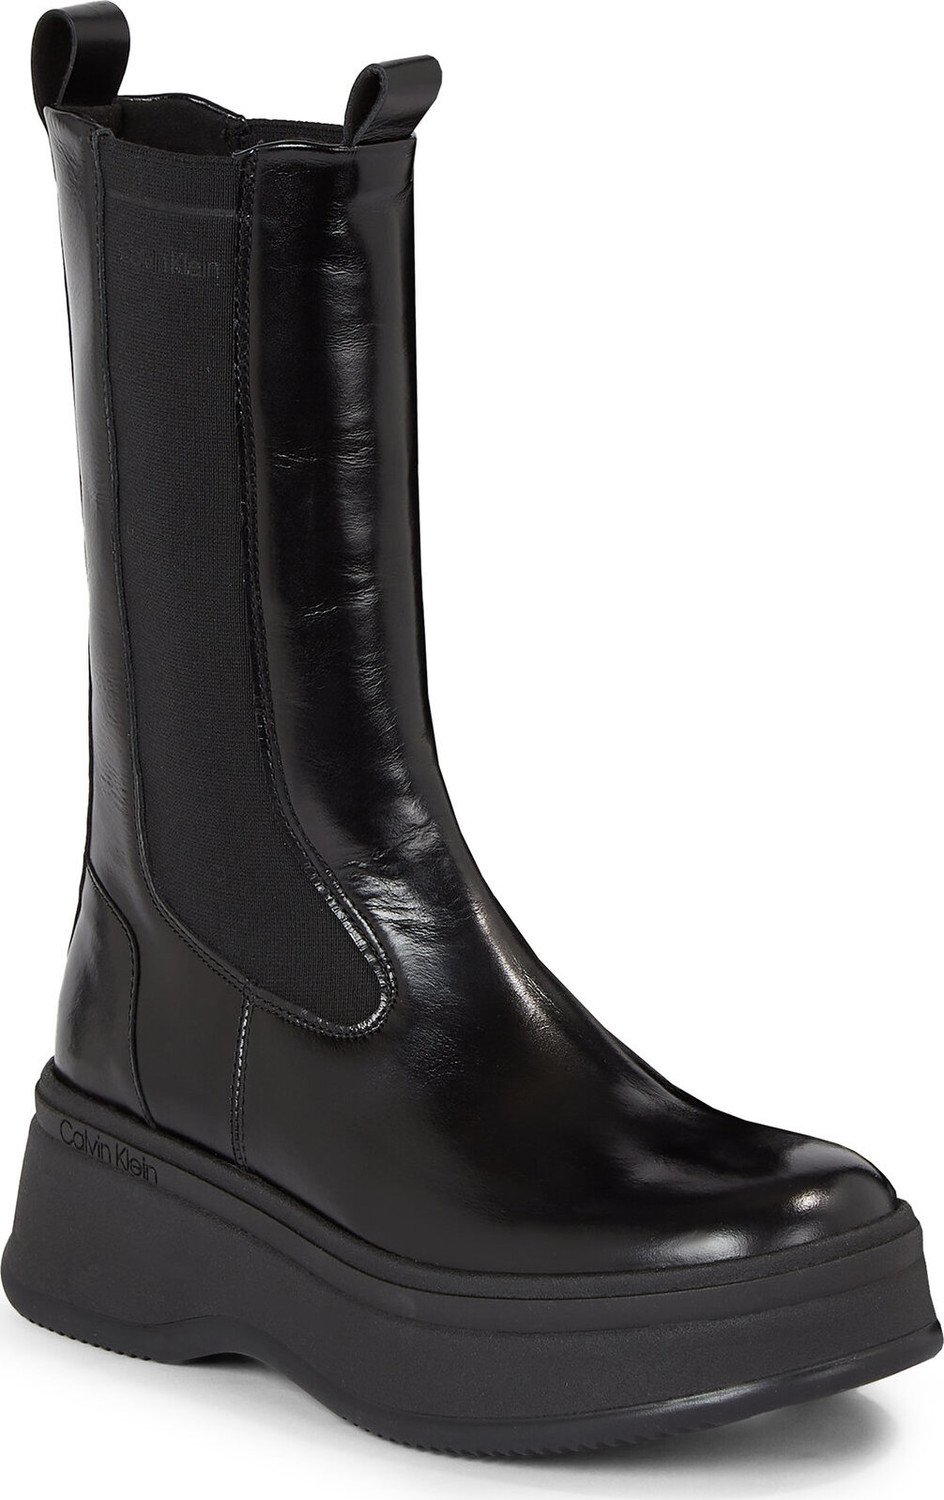 Kotníková obuv s elastickým prvkem Calvin Klein Pitched Chelsea Boot HW0HW01686 Ck Black BEH